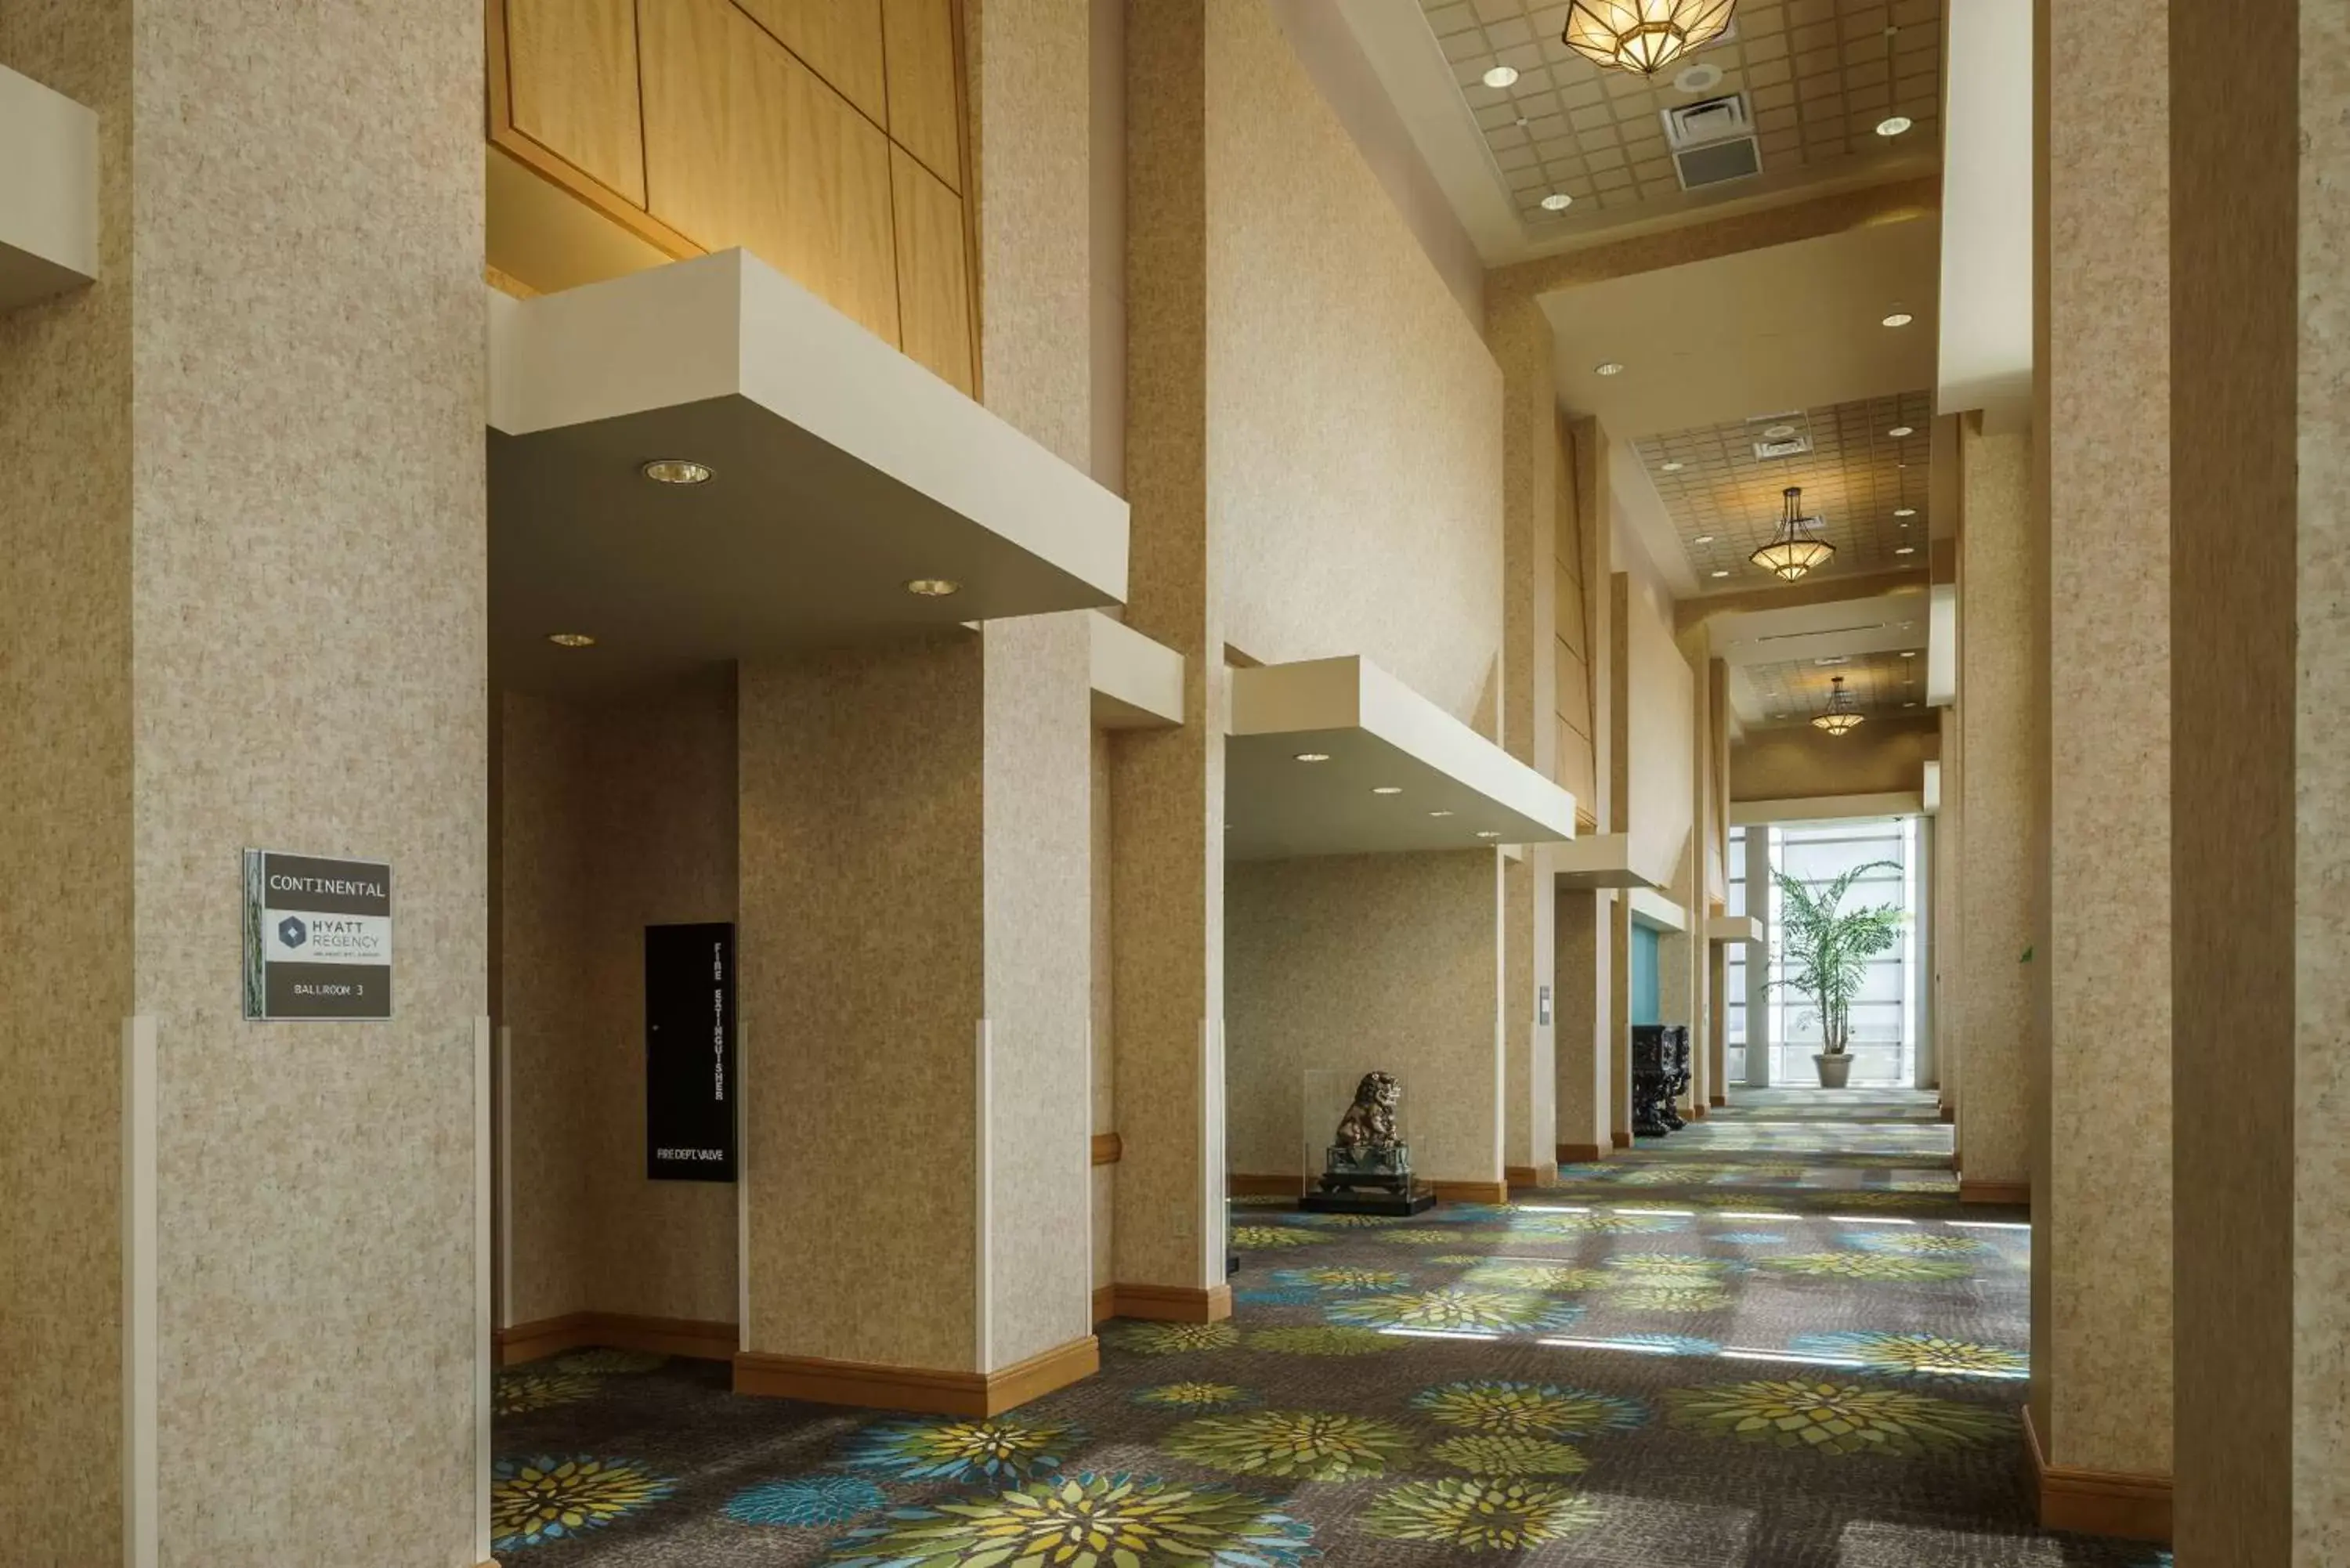 Banquet/Function facilities, Lobby/Reception in Hyatt Regency Orlando International Airport Hotel